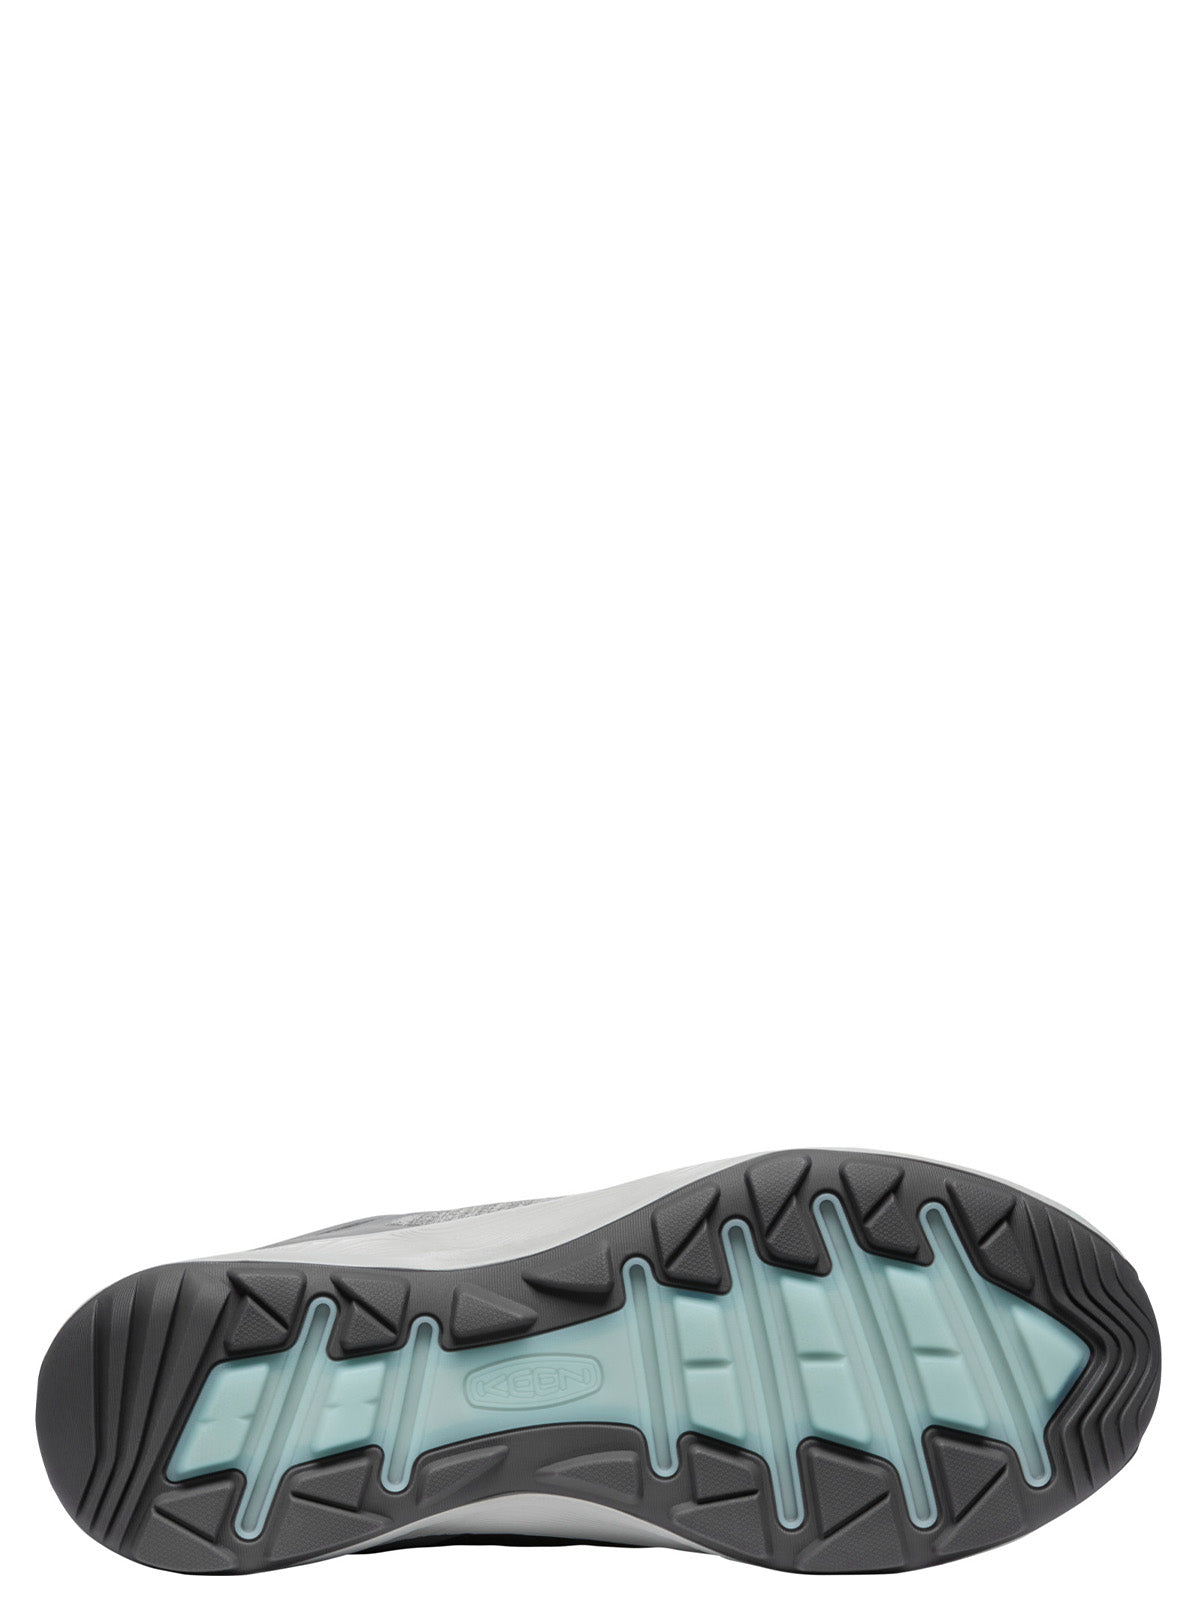 Terradora Flex Waterproof Shoe for Women